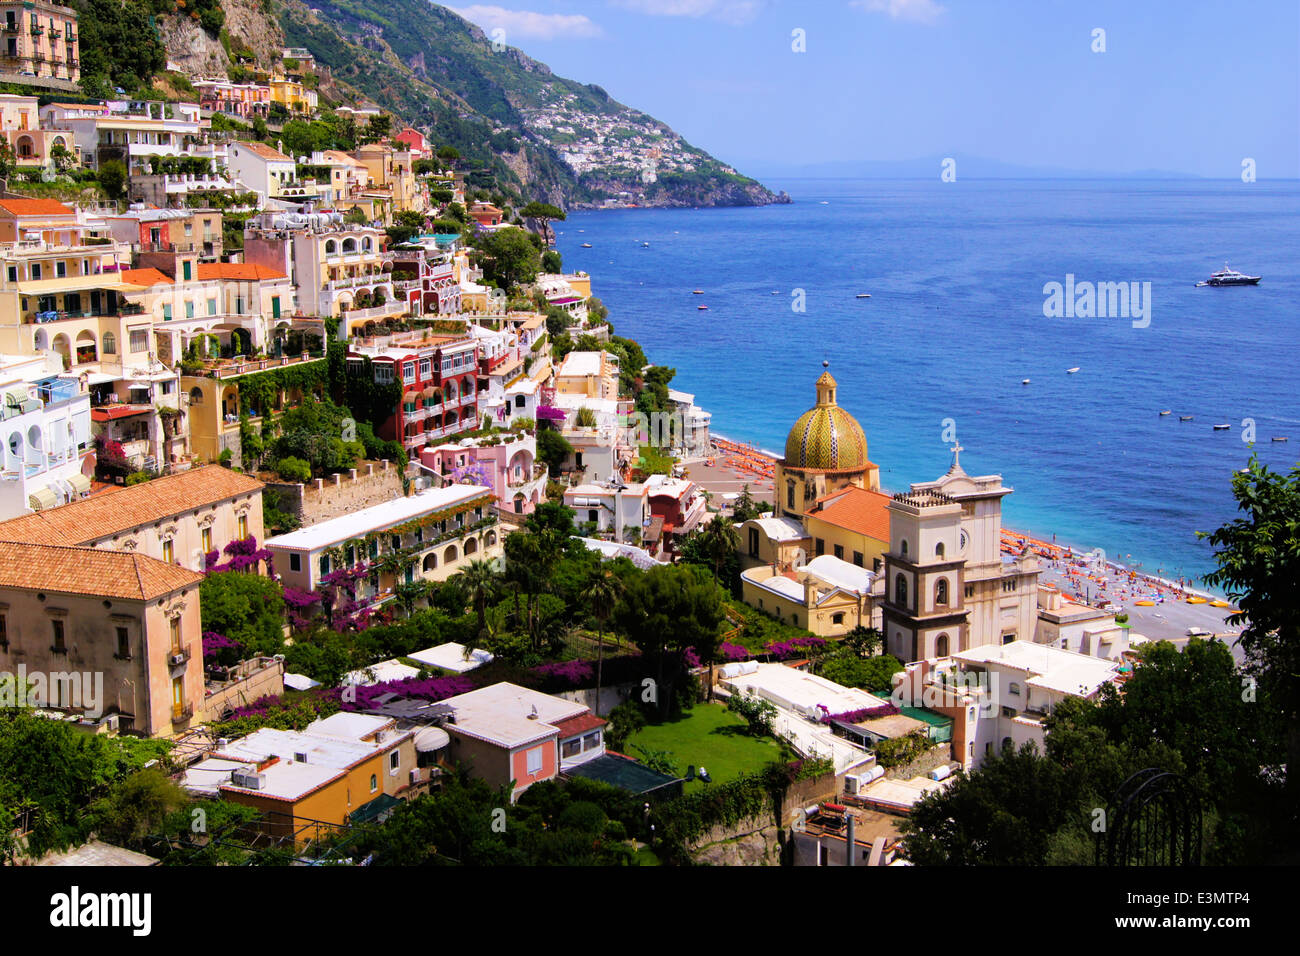 Vue de la ville de Positano, sur la côte amalfitaine, de l'Italie Banque D'Images